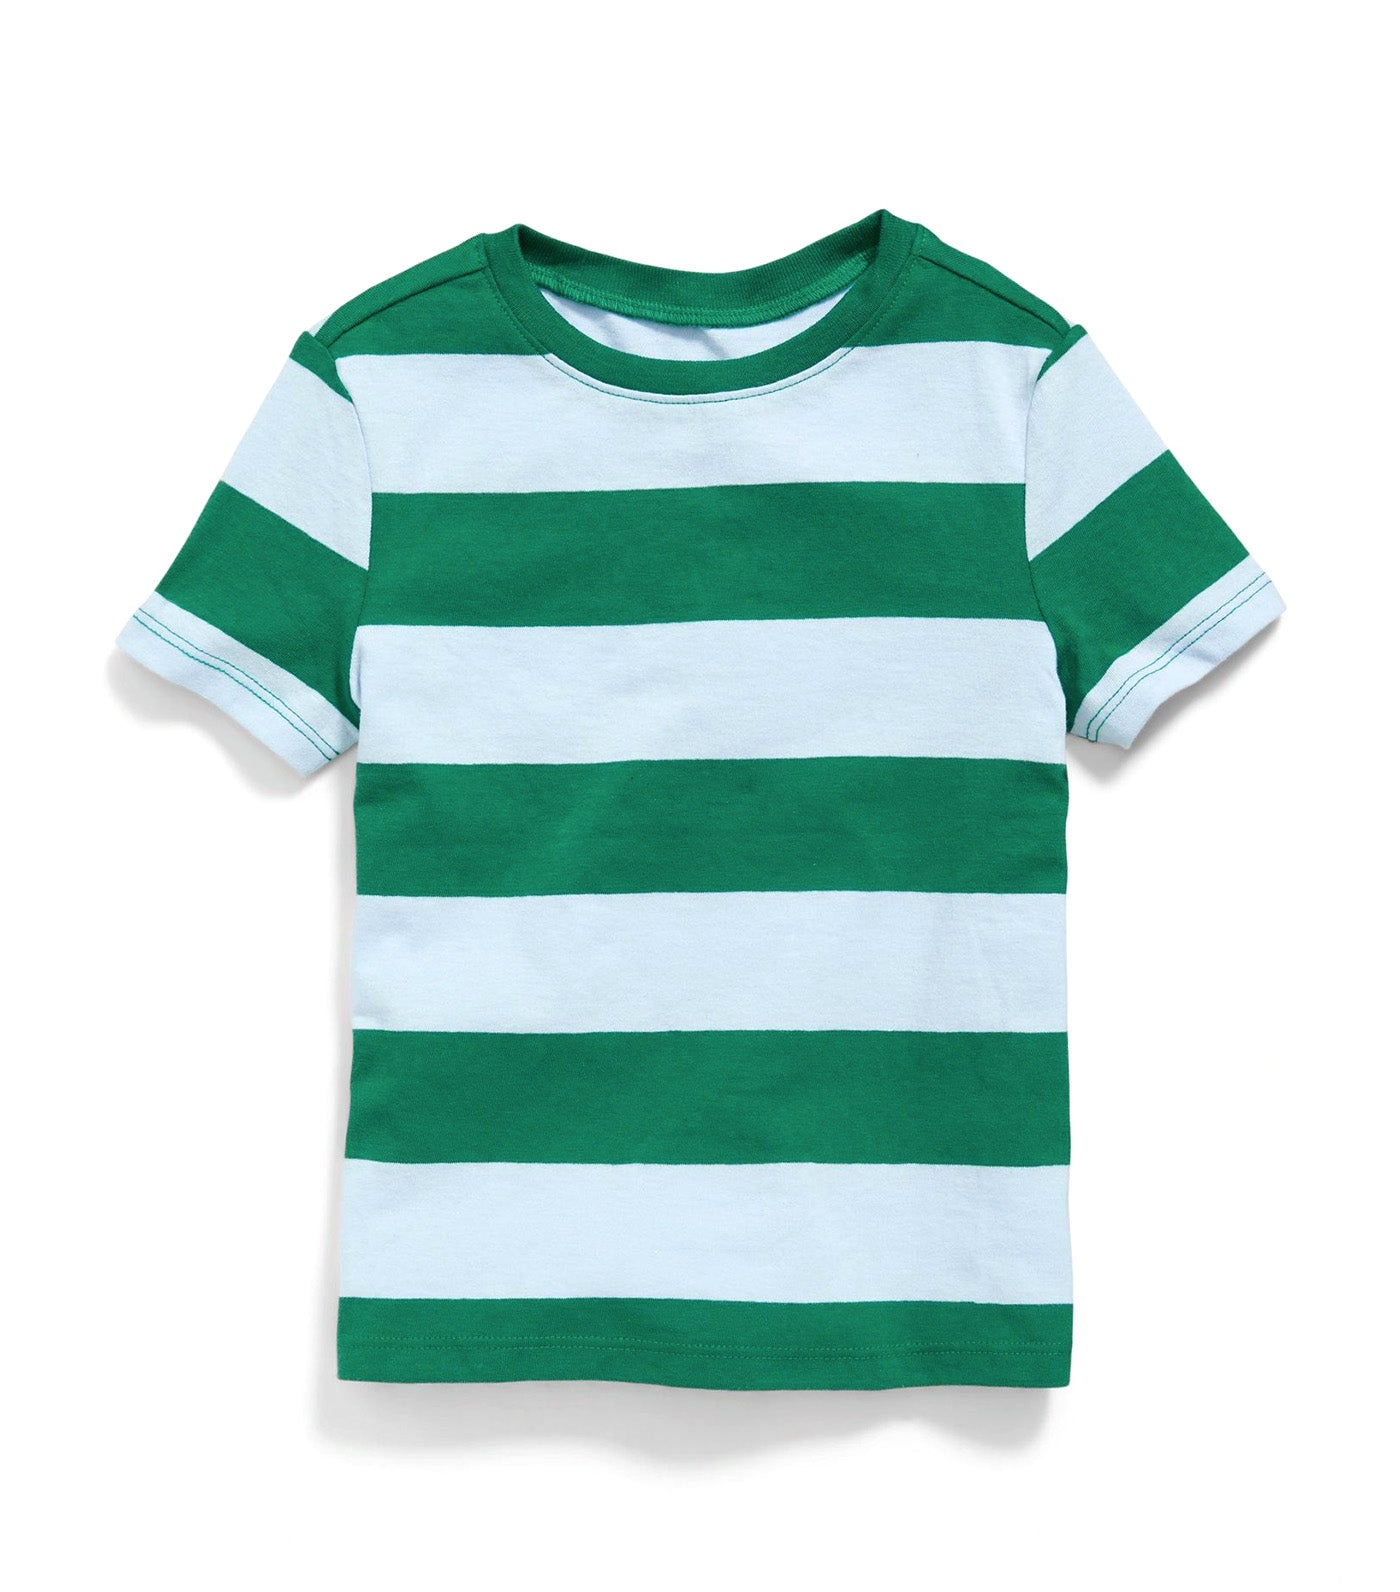 Unisex Printed Short-Sleeve T-Shirt for Toddler Blue/Green Stripe